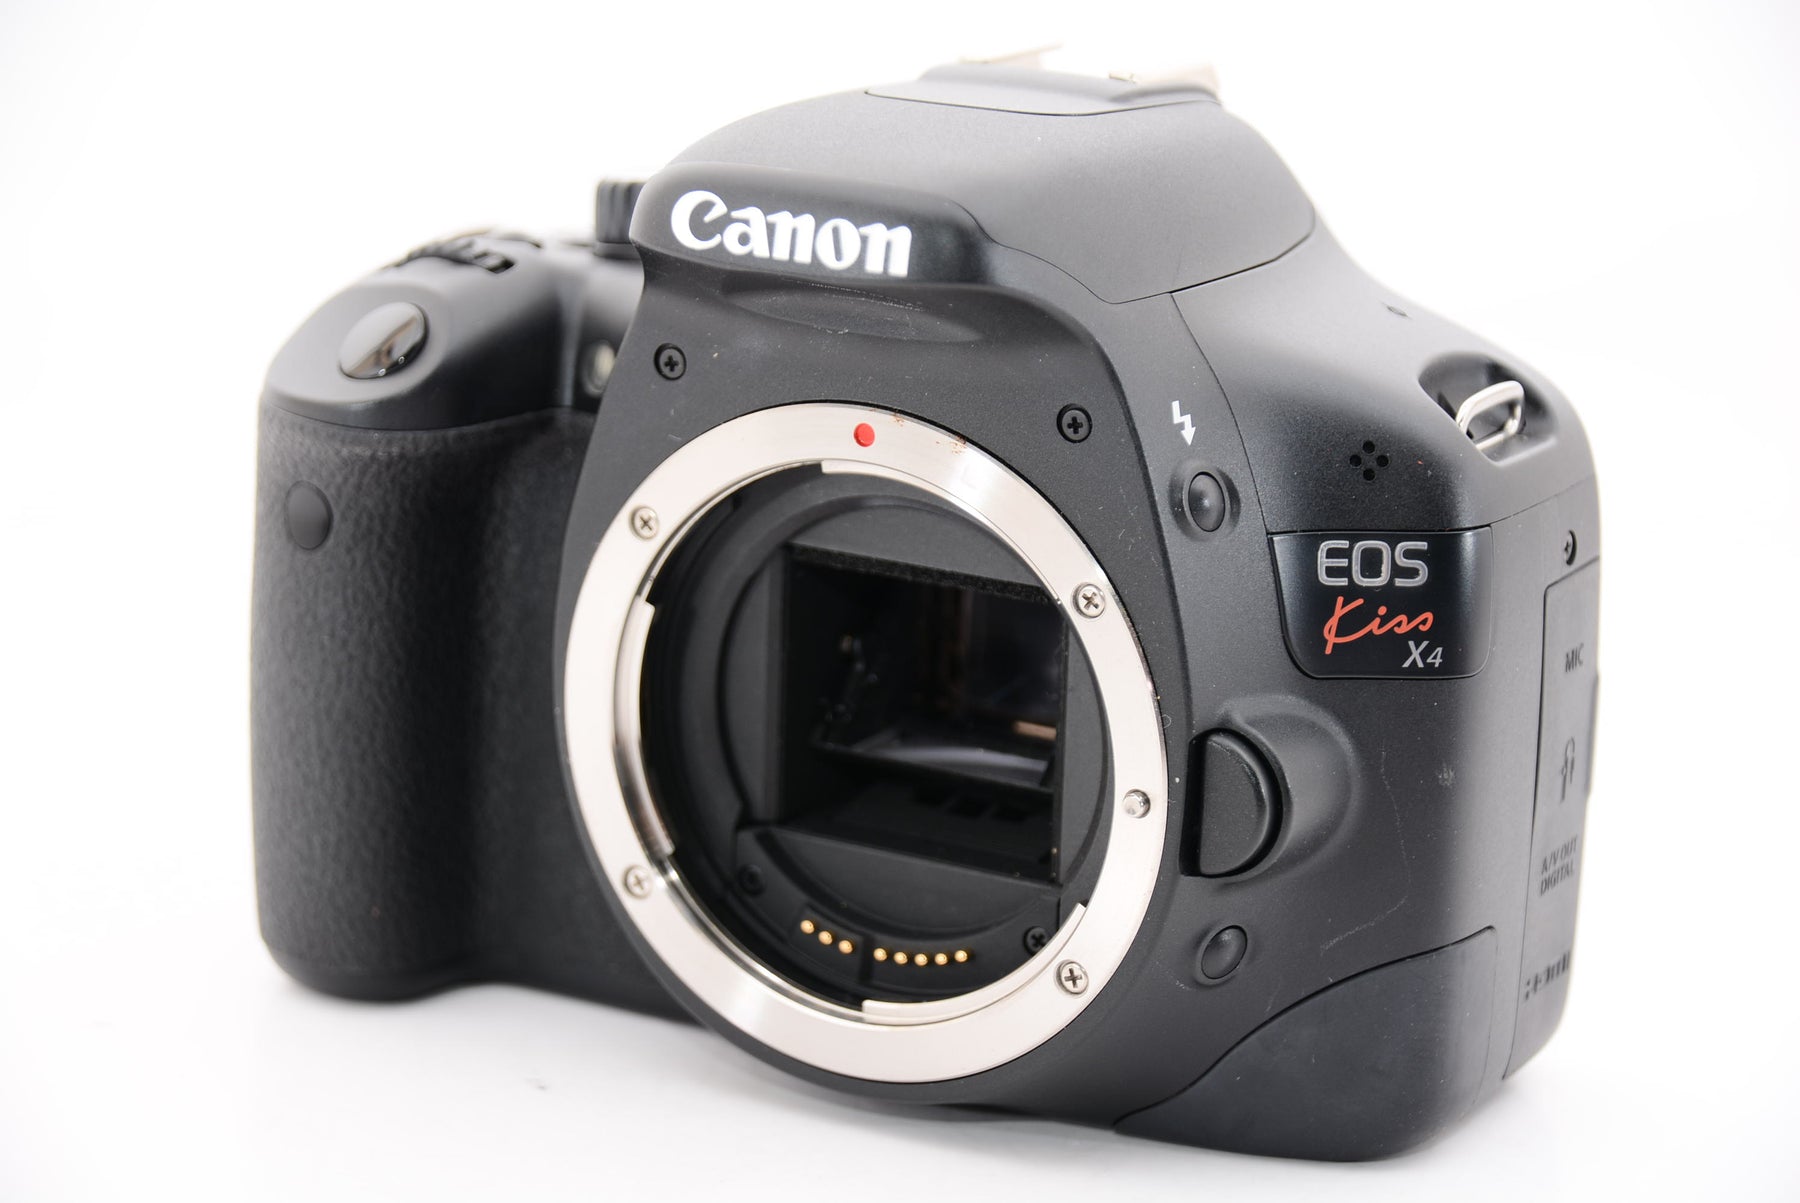 Canon デジタル一眼レフカメラ EOS Kiss X4 EF-S 18-55 IS レンズキット KISSX4-1855ISLK - 4